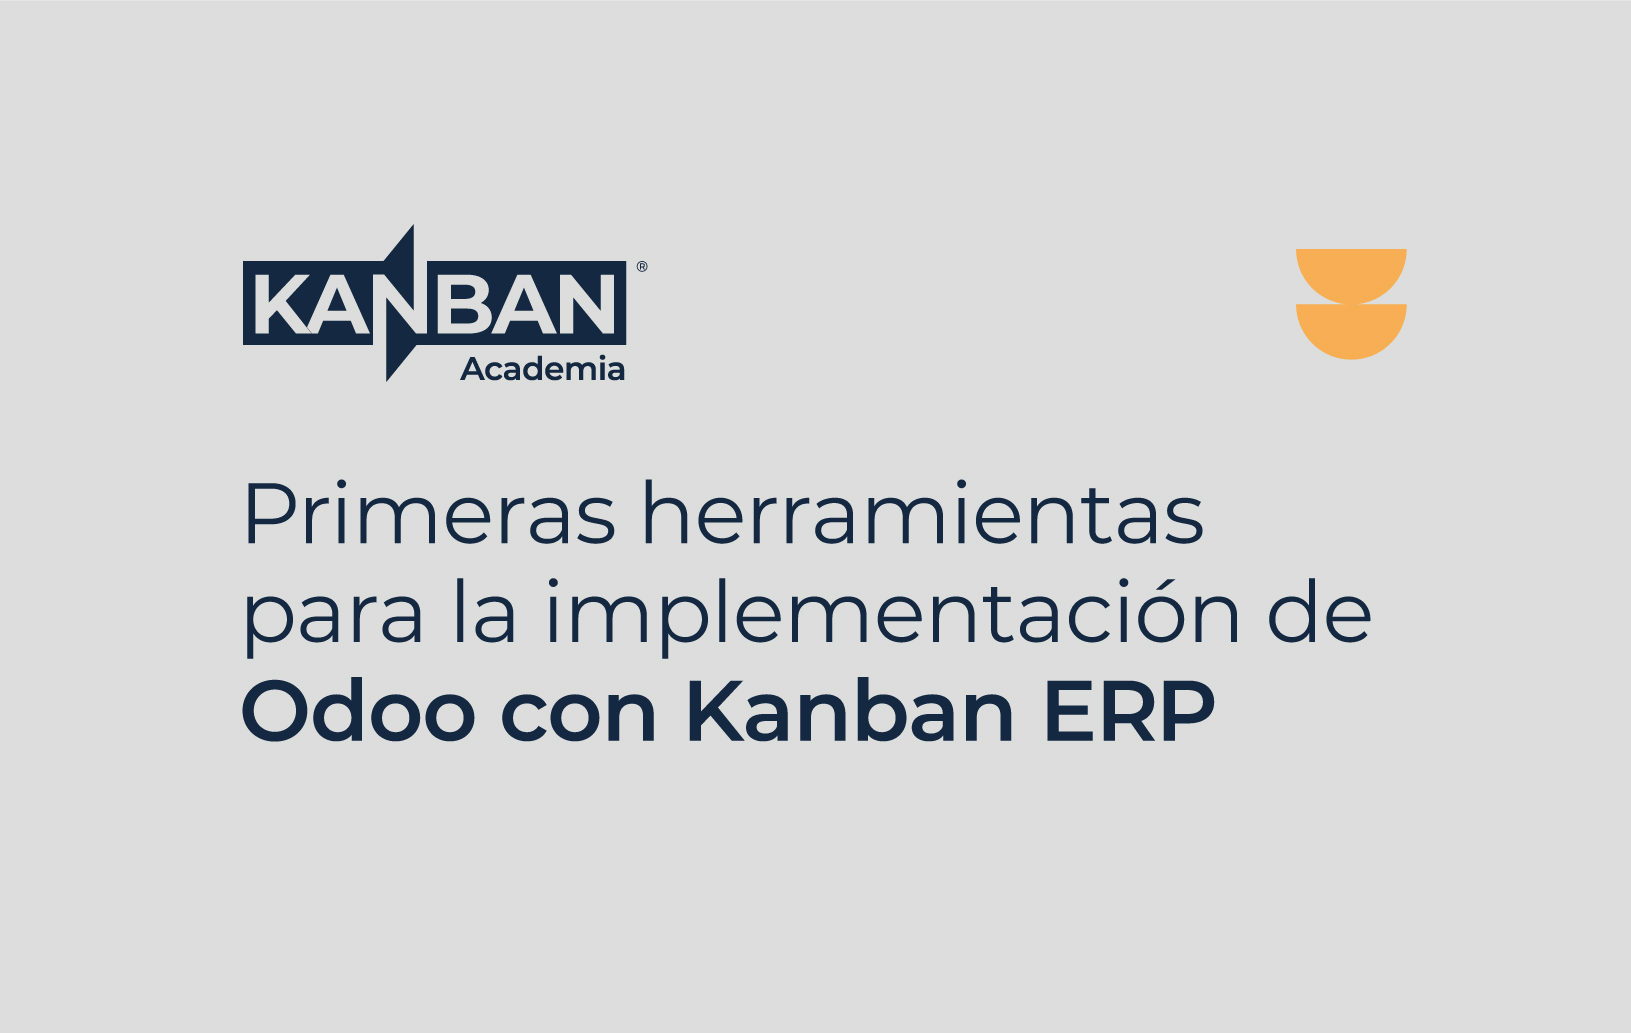 Primeras herramientas para la implementación de Odoo con Kanban ERP